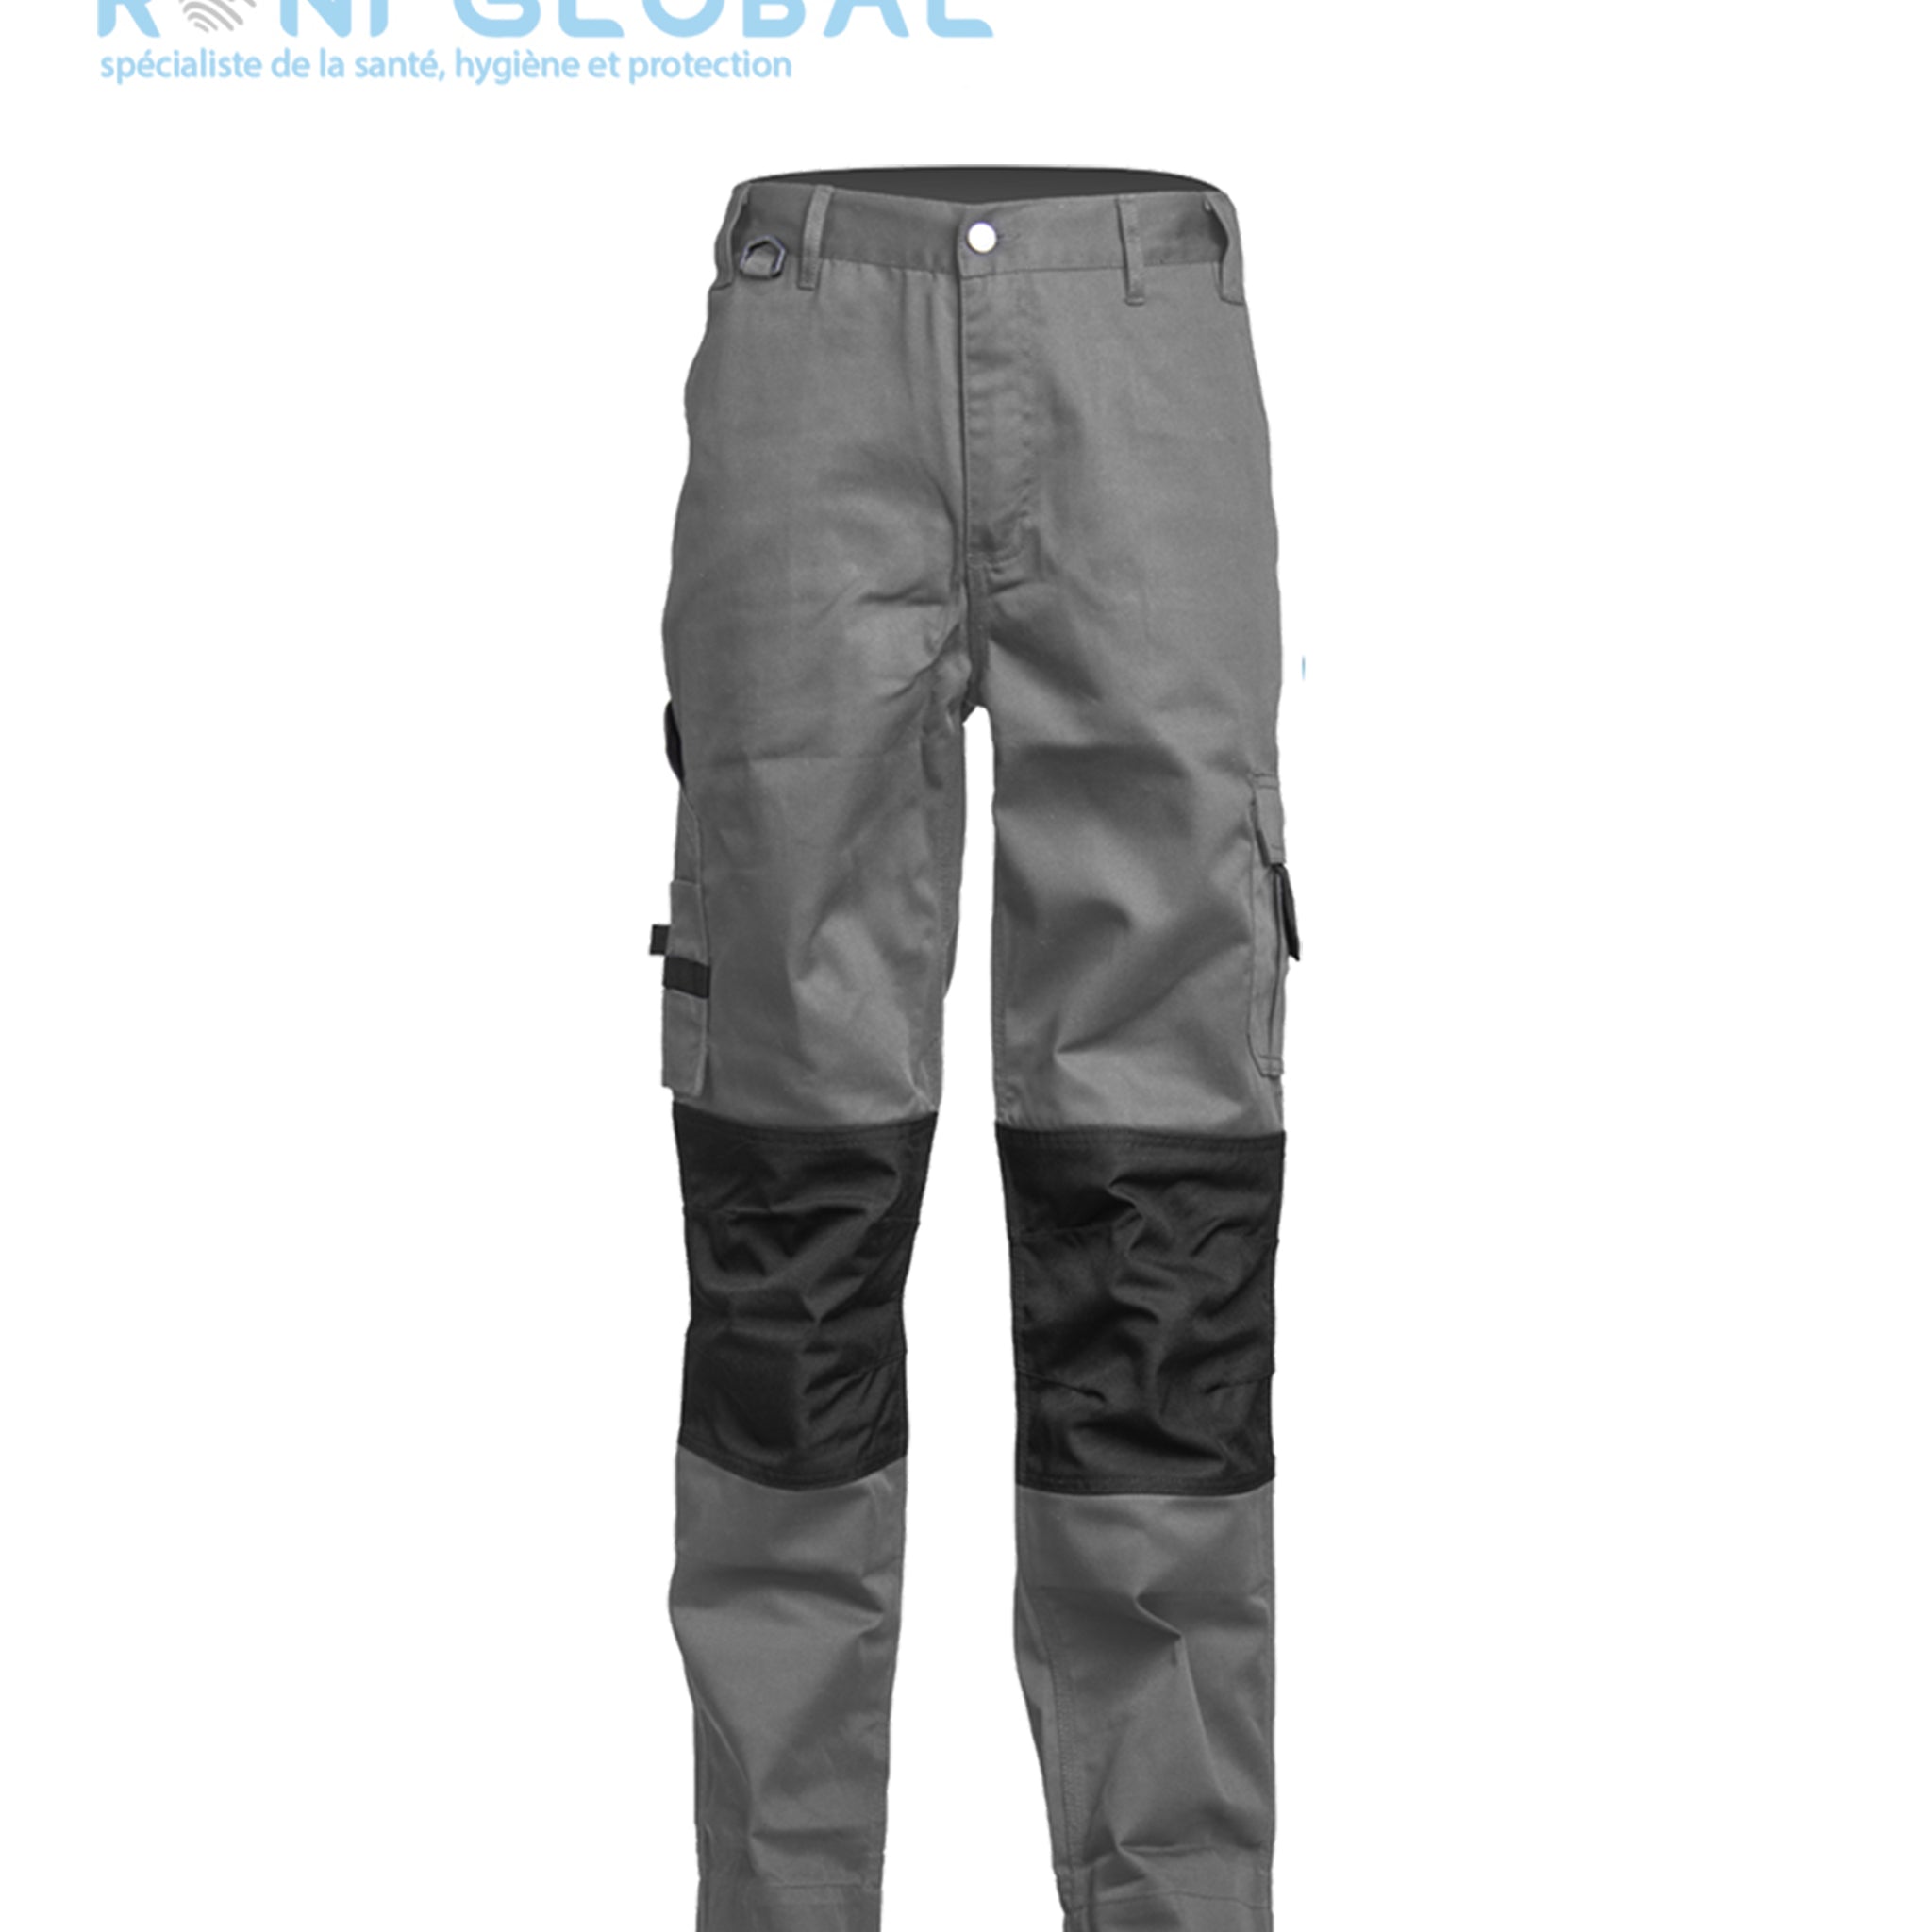 Pantalon de travail avec protection des genoux en polyester/coton 7 poches - CLASS COVERGUARD